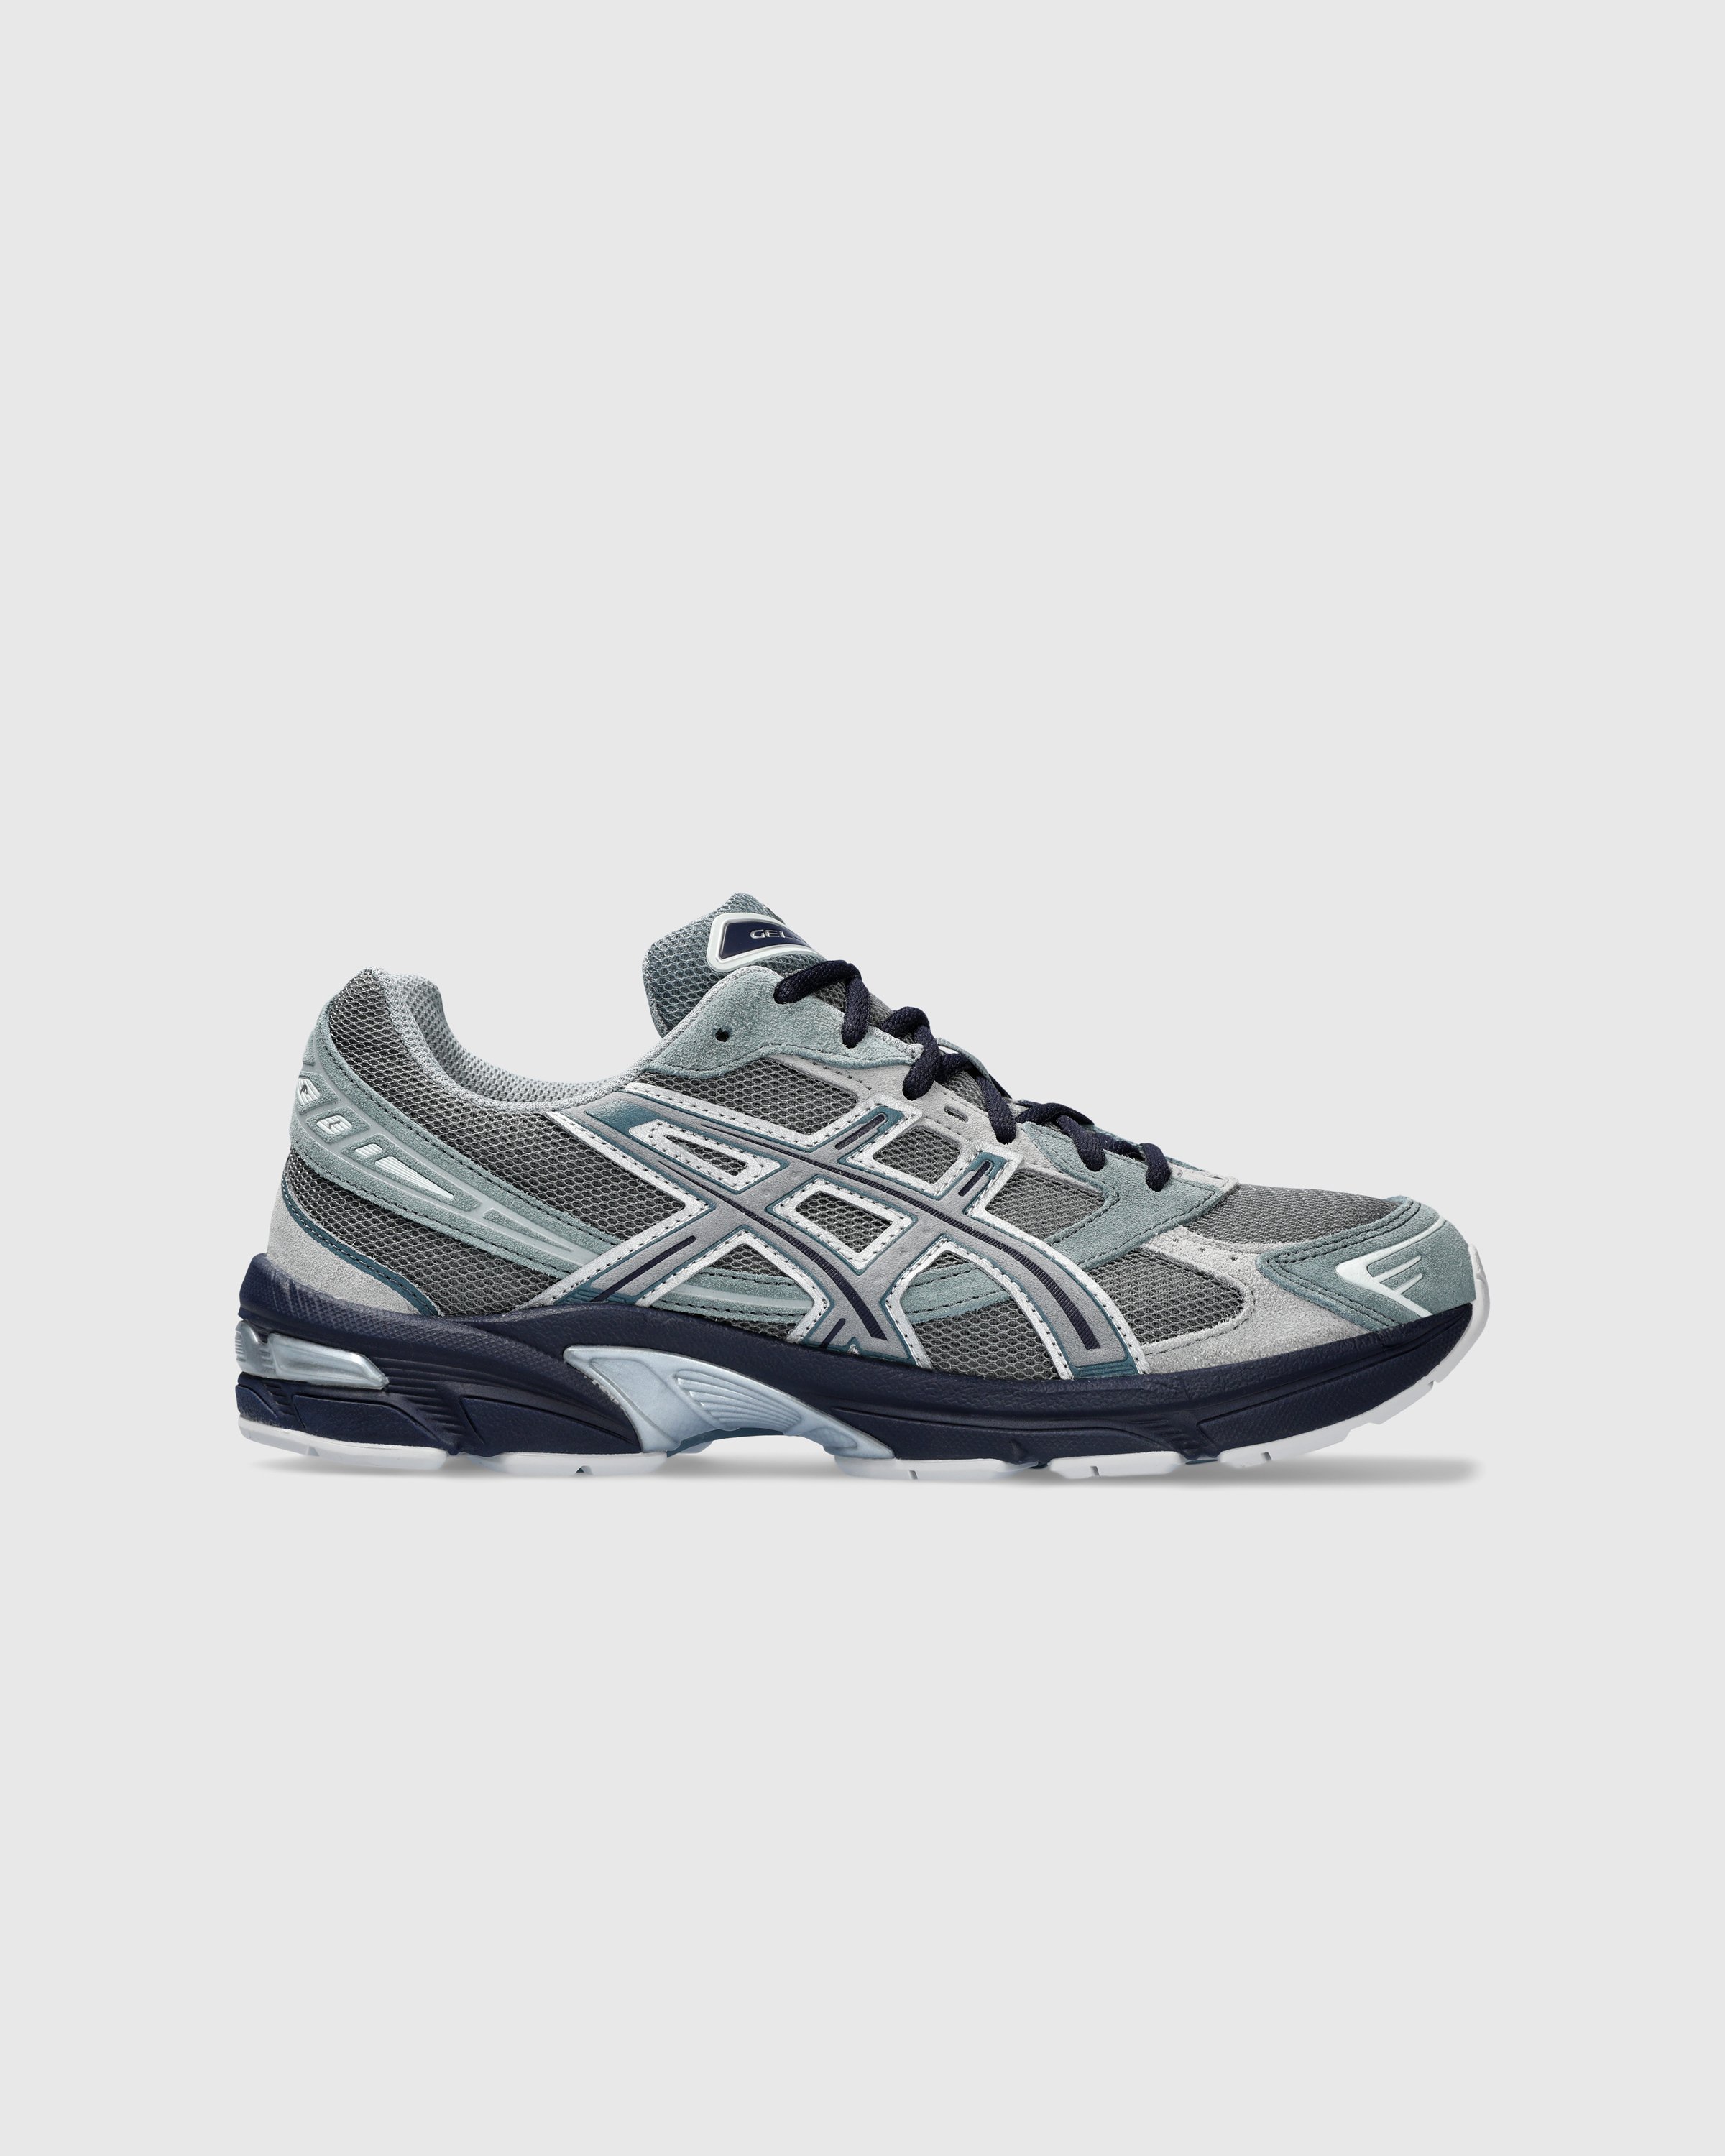 asics - GEL-1130 Steel Gray/Sheet Rock - Footwear - Grey - Image 1